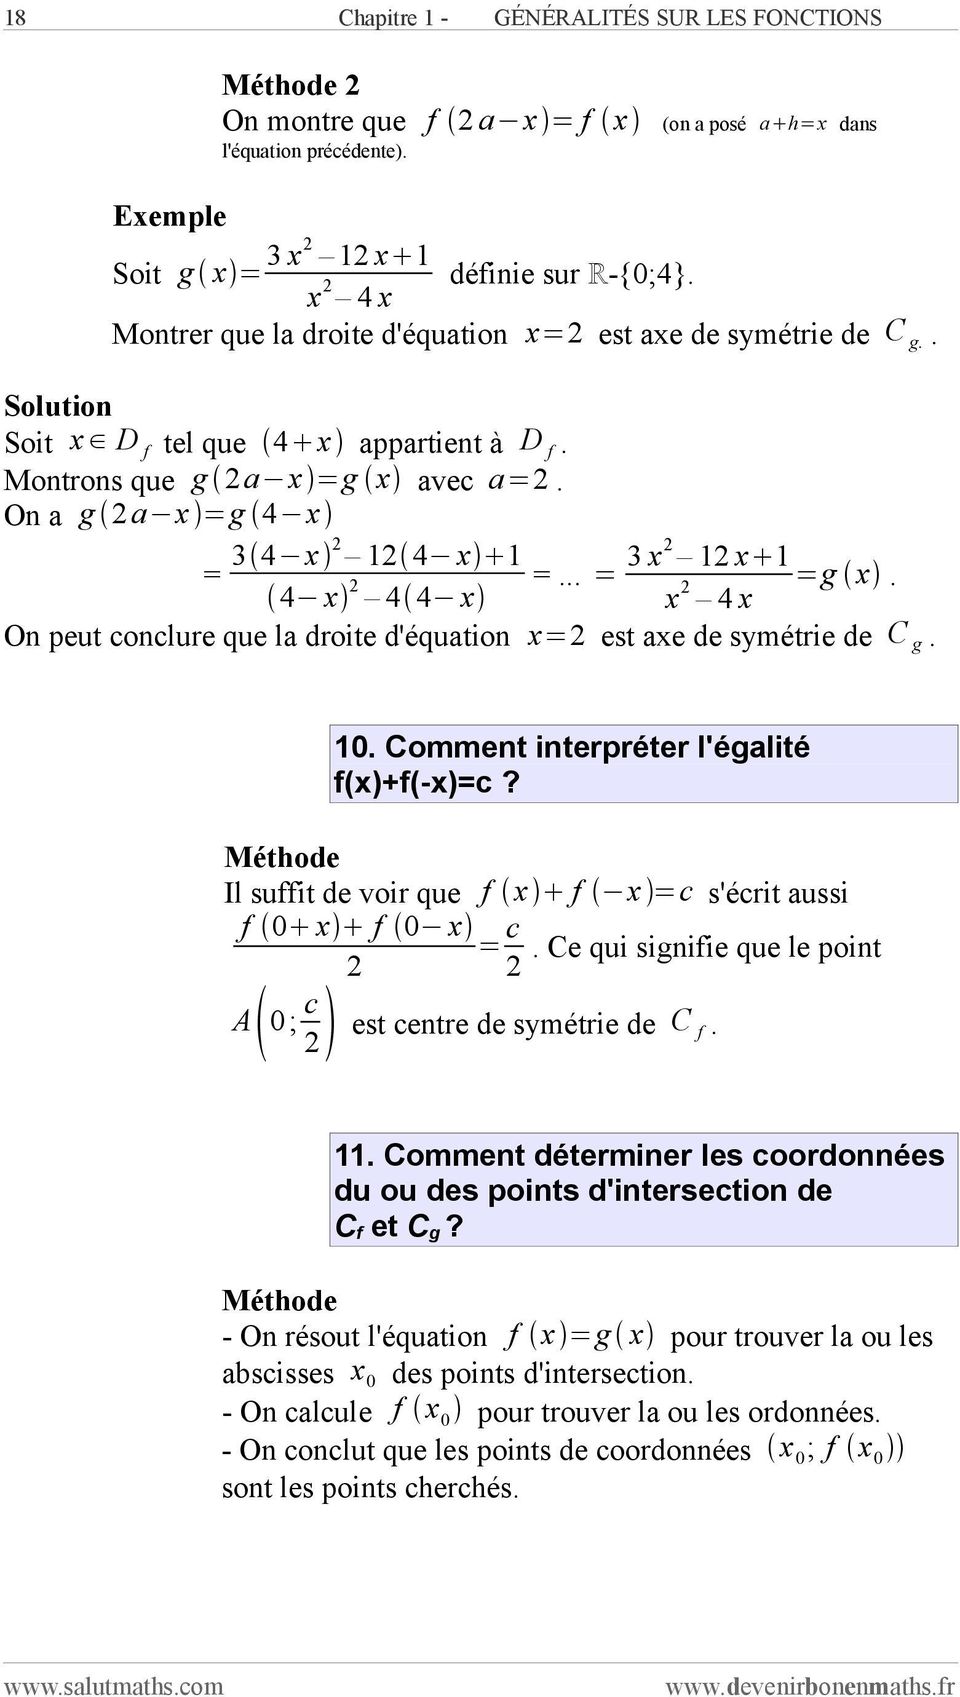 4 x 4 4 x x 4 x On peut conclure que la droite d'équation x= est axe de symétrie de C g. 10. Comment interpréter l'égalité f(x)+f(-x)=c? Il suffit de voir que f x f x =c s'écrit aussi f 0 x f 0 x = c.